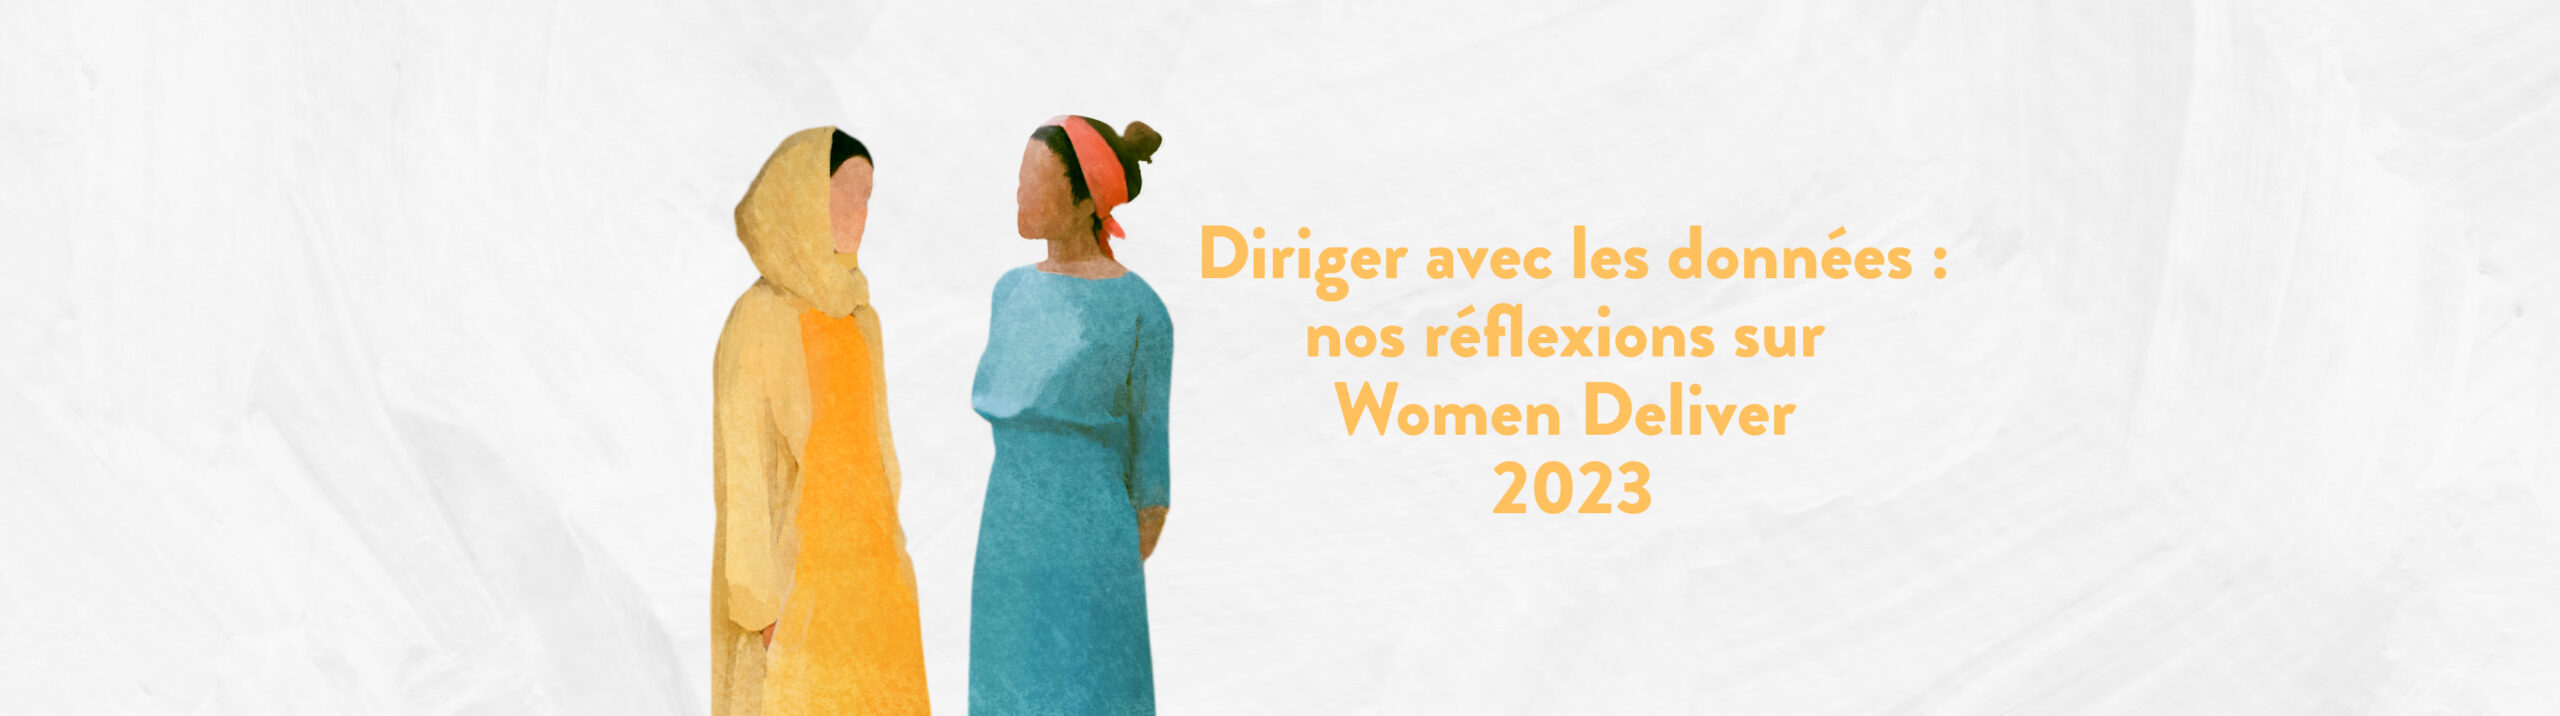 Diriger avec les données : nos réflexions sur la conférence Women Deliver 2023 